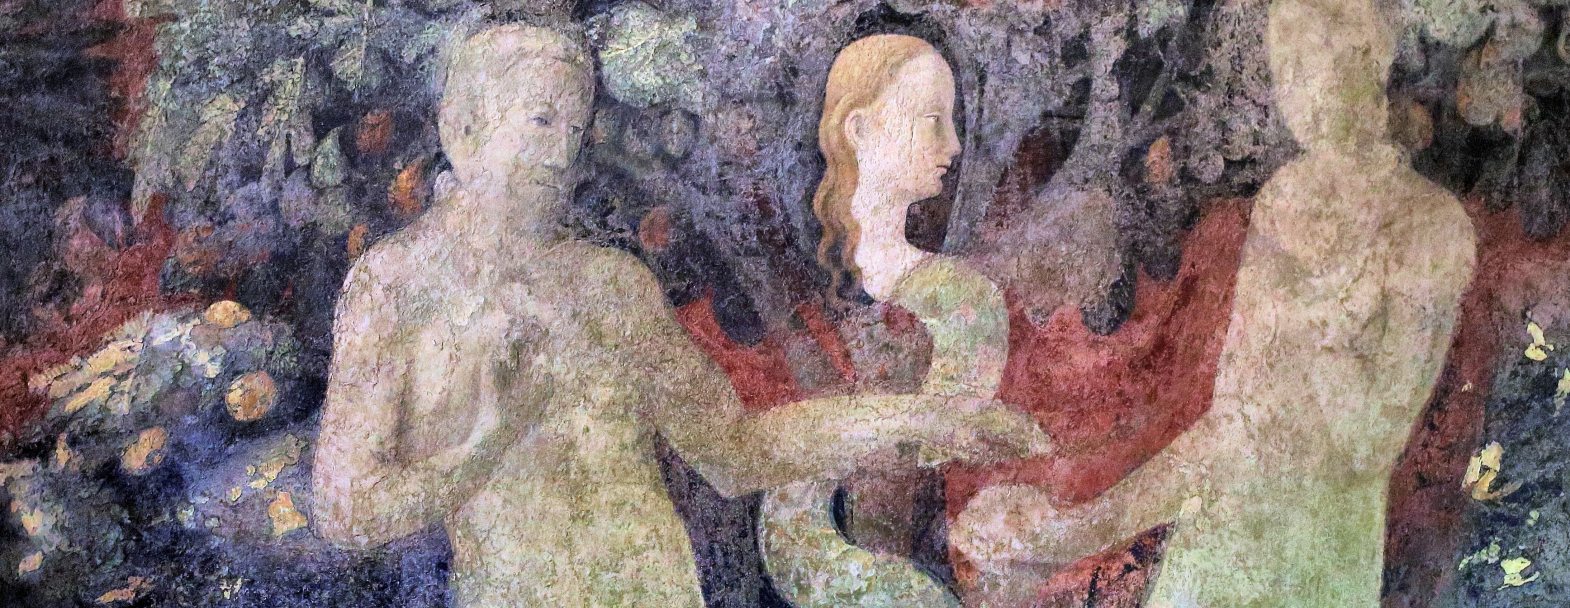 Le Pêché originel, peint par Paolo Uccello (1397-1475), Le Cloître Vert à Florence, Santa Maria Novella. Le mythe de la chute est relaté dans le Livre de la Genèse. Il symbolise l&#039;origine du mal et les souffrances. Le stress et l&#039;angoisse en sont des formes psychiques caractéristiques de notre temps. / © Flickr CC BY-NC-SA 2.0 / Jean-Louis Mazières